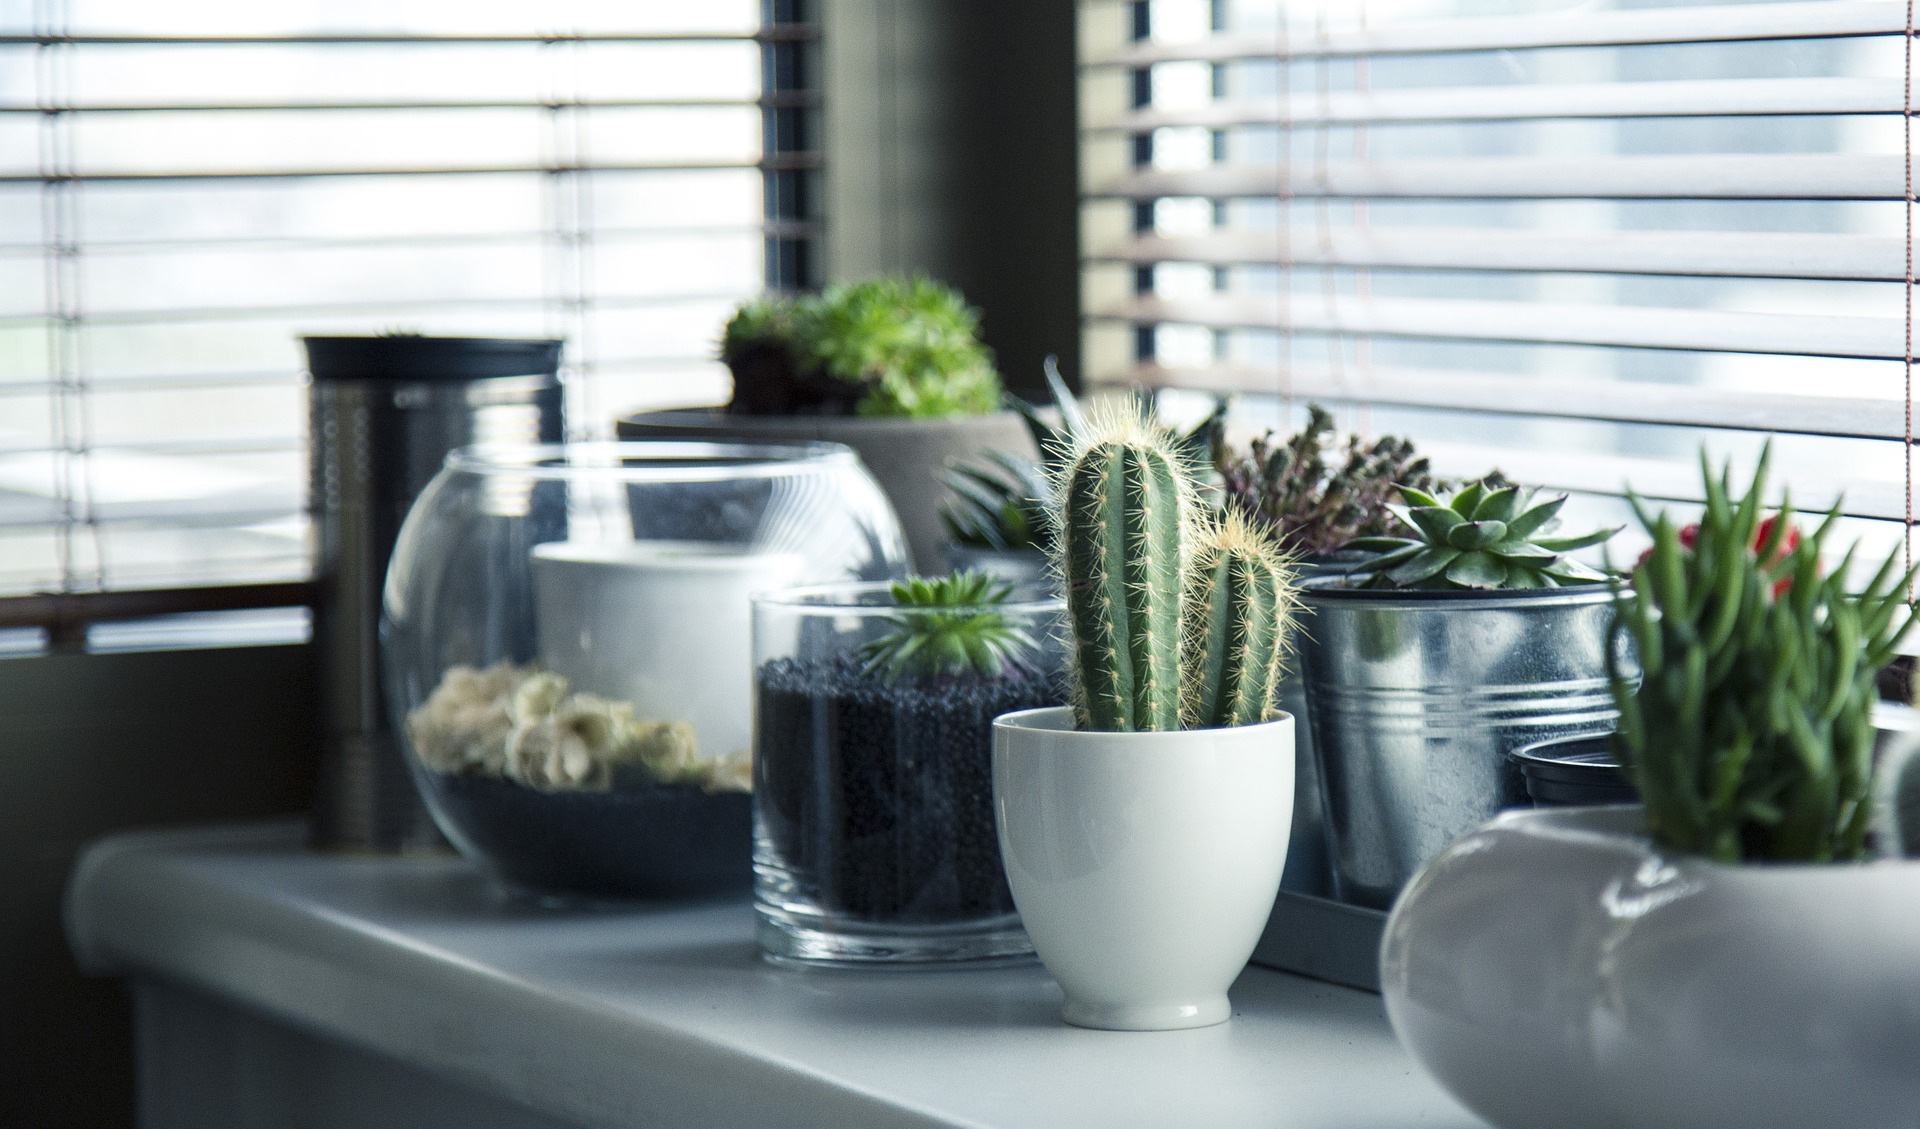 5 इंडोर कैक्टस प्लांट – 5 Indoor Cactus Plant